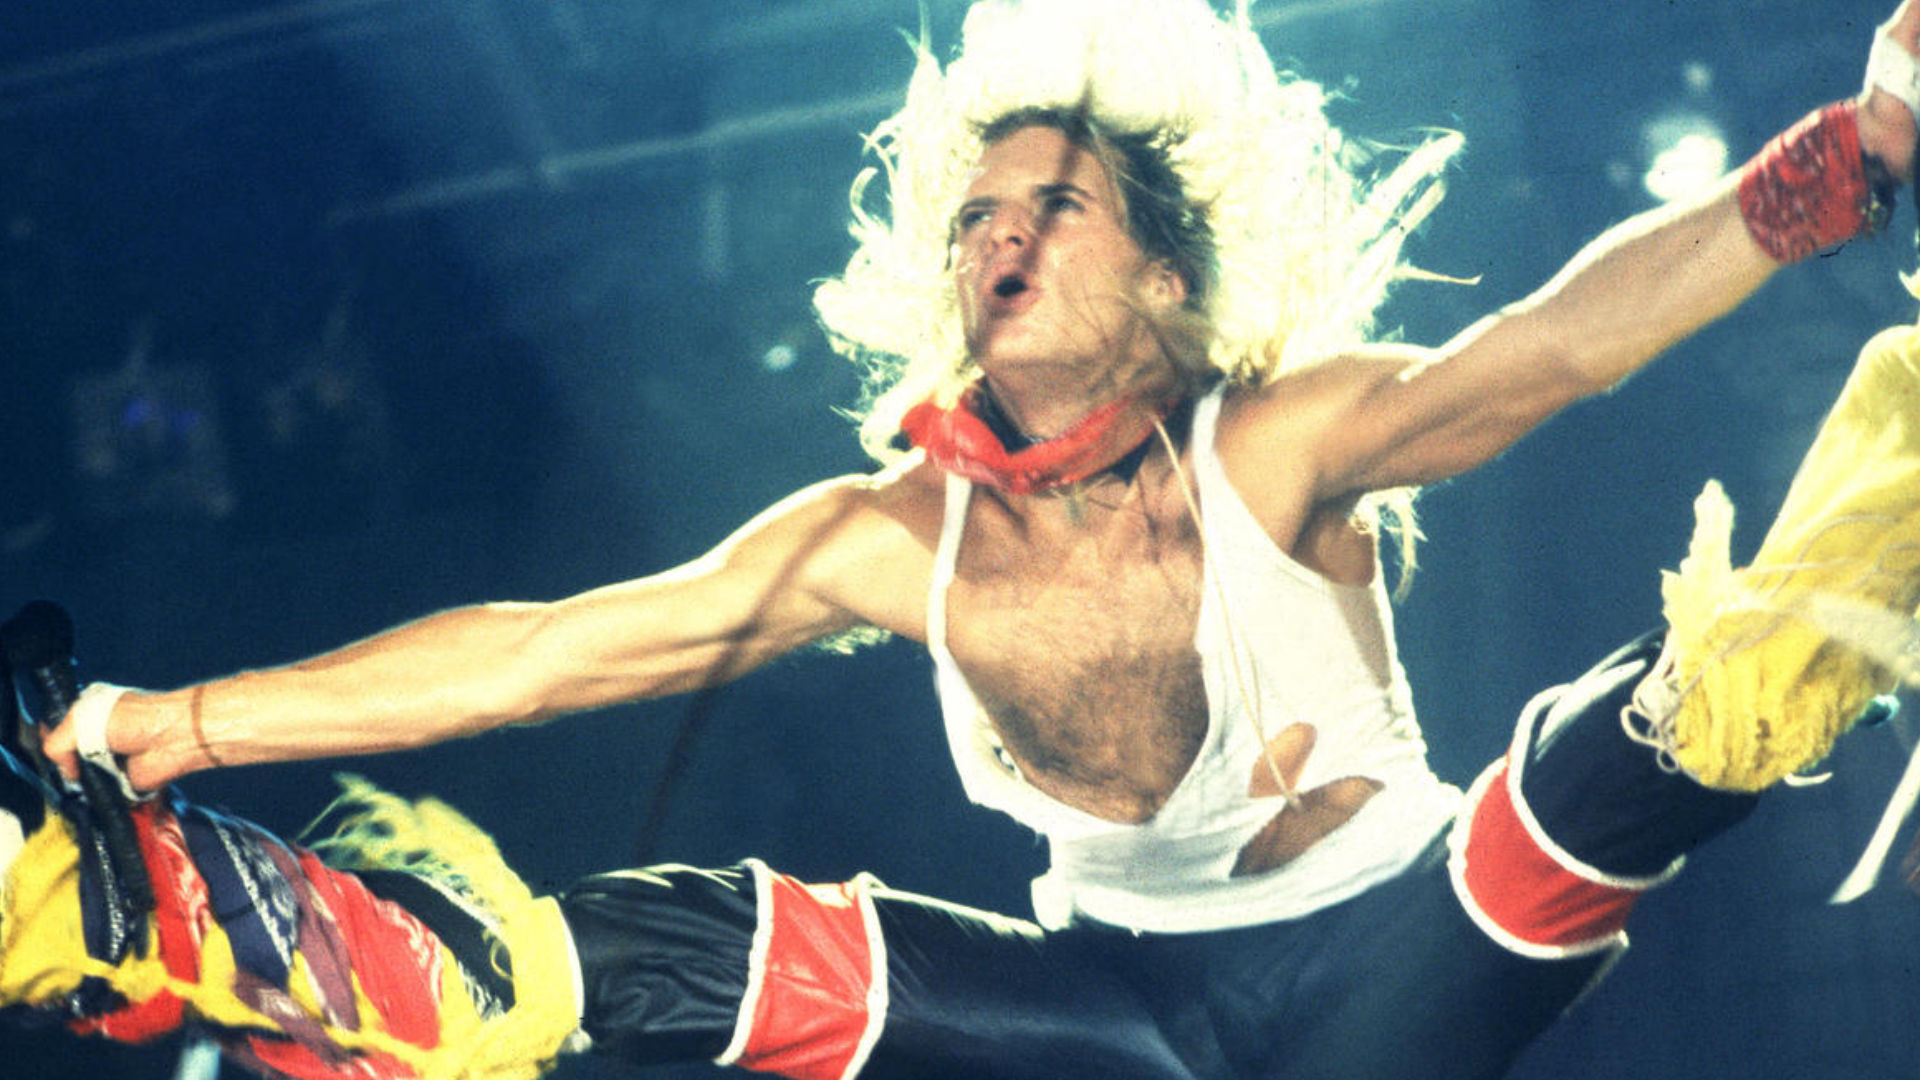 Delorean Musical: La historia de 'Jump', la canción himno de Van Halen